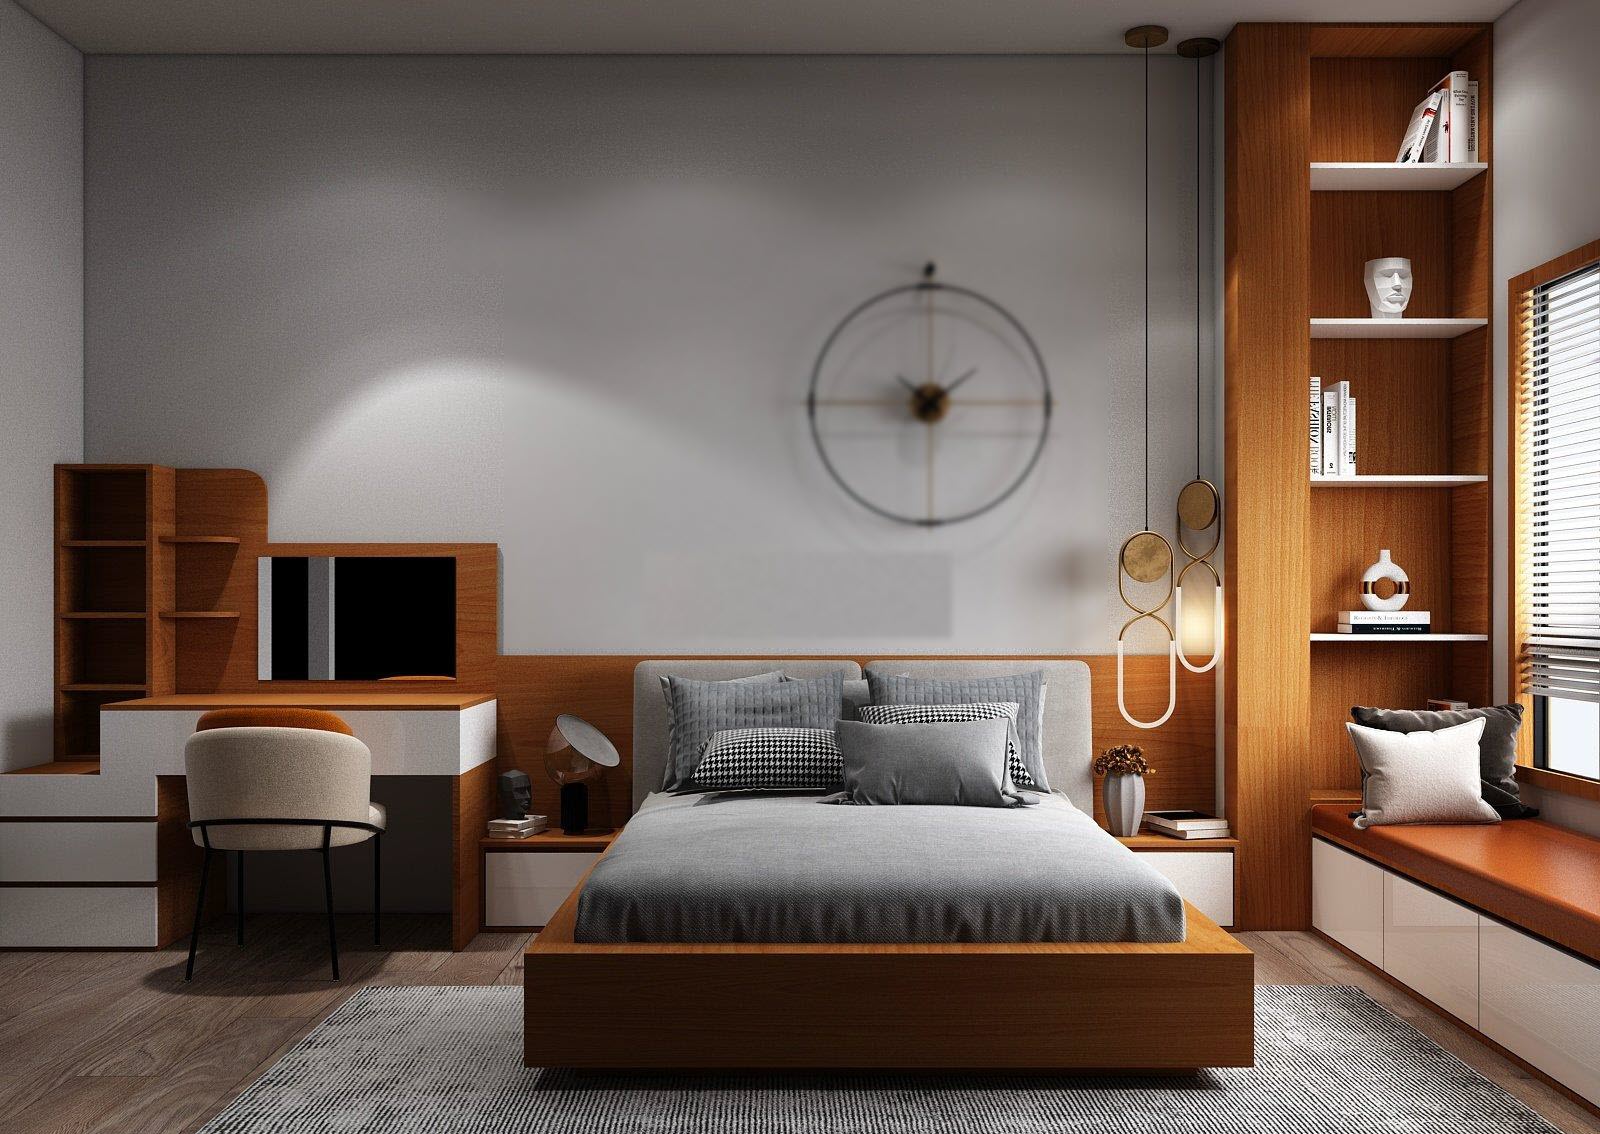 Mẫu phòng ngủ hiện đại cao cấp bằng gỗ